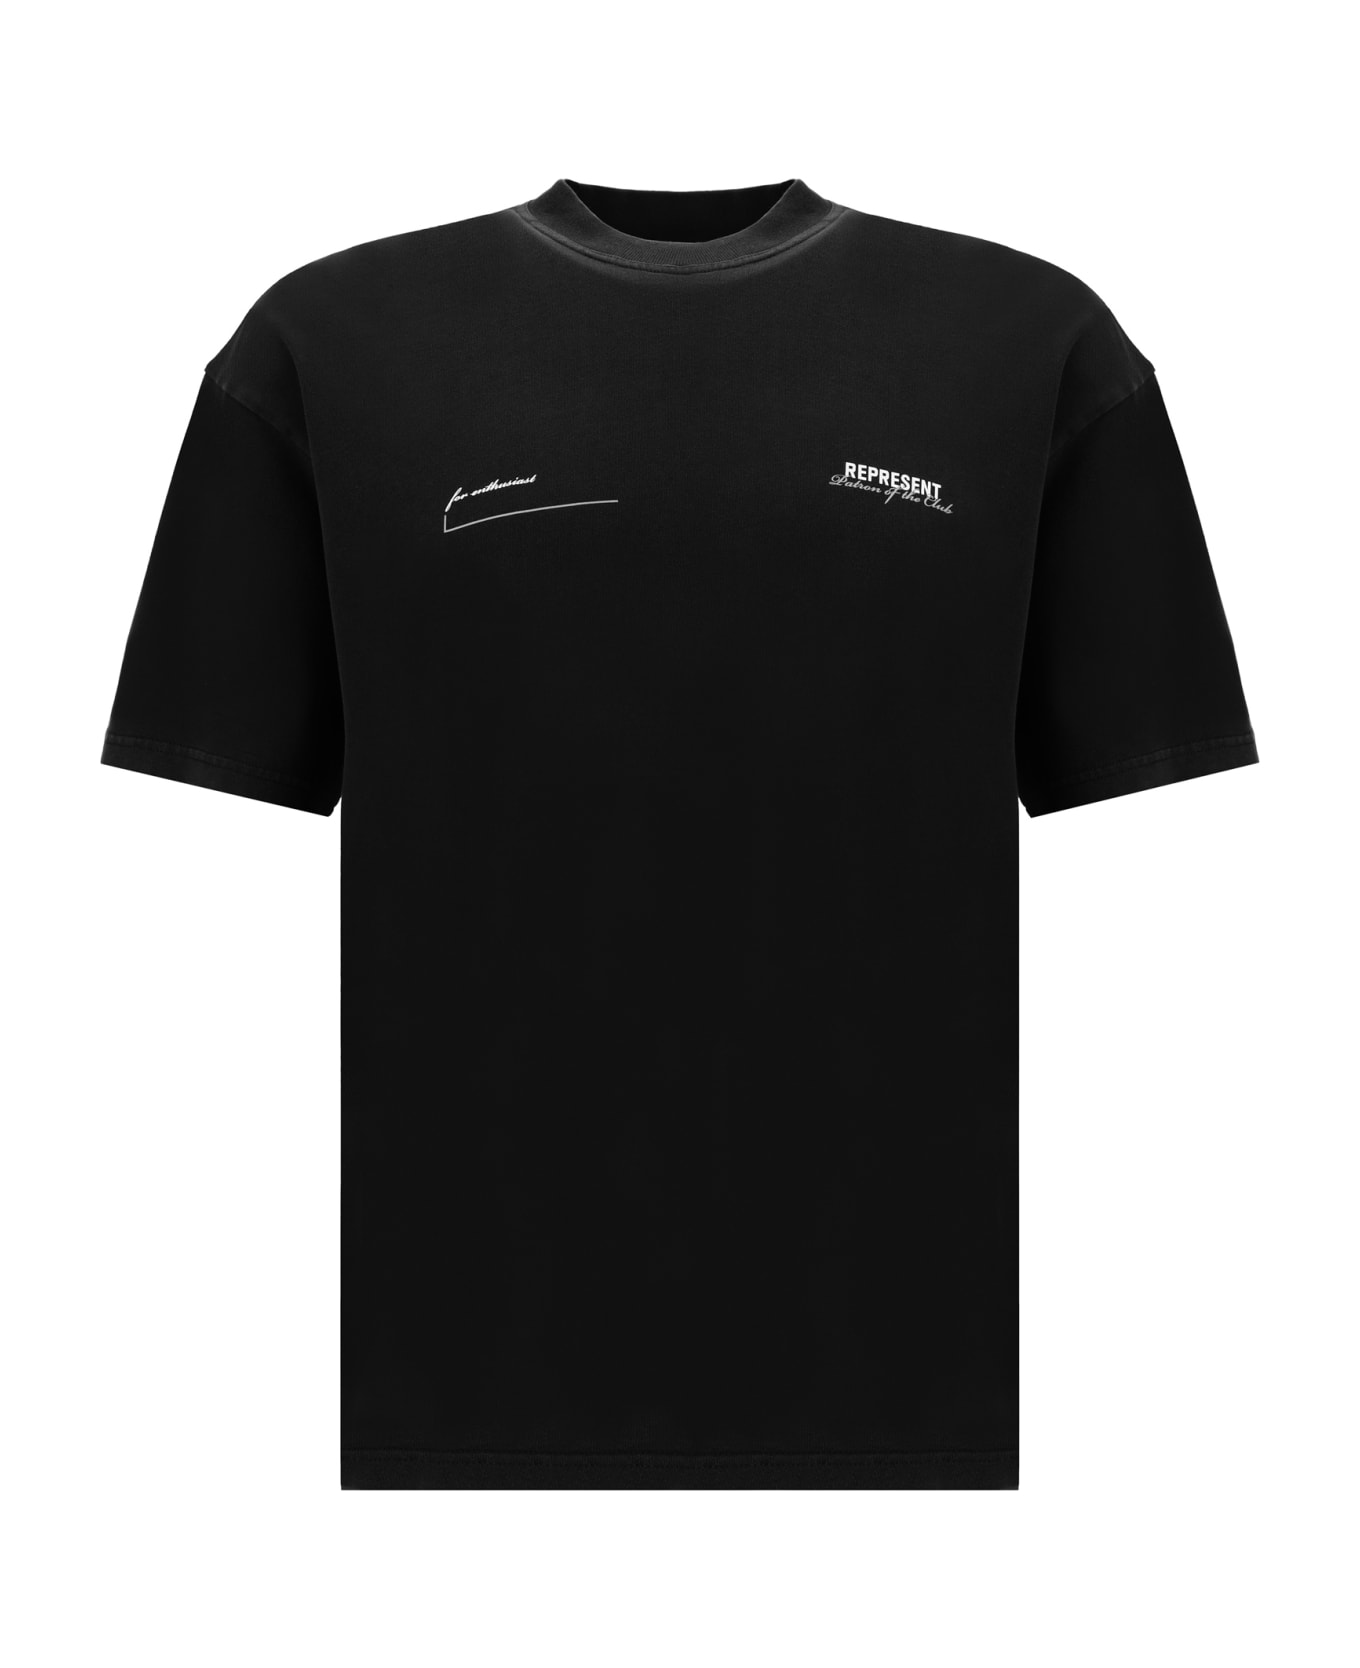 REPRESENT T-shirt - Black